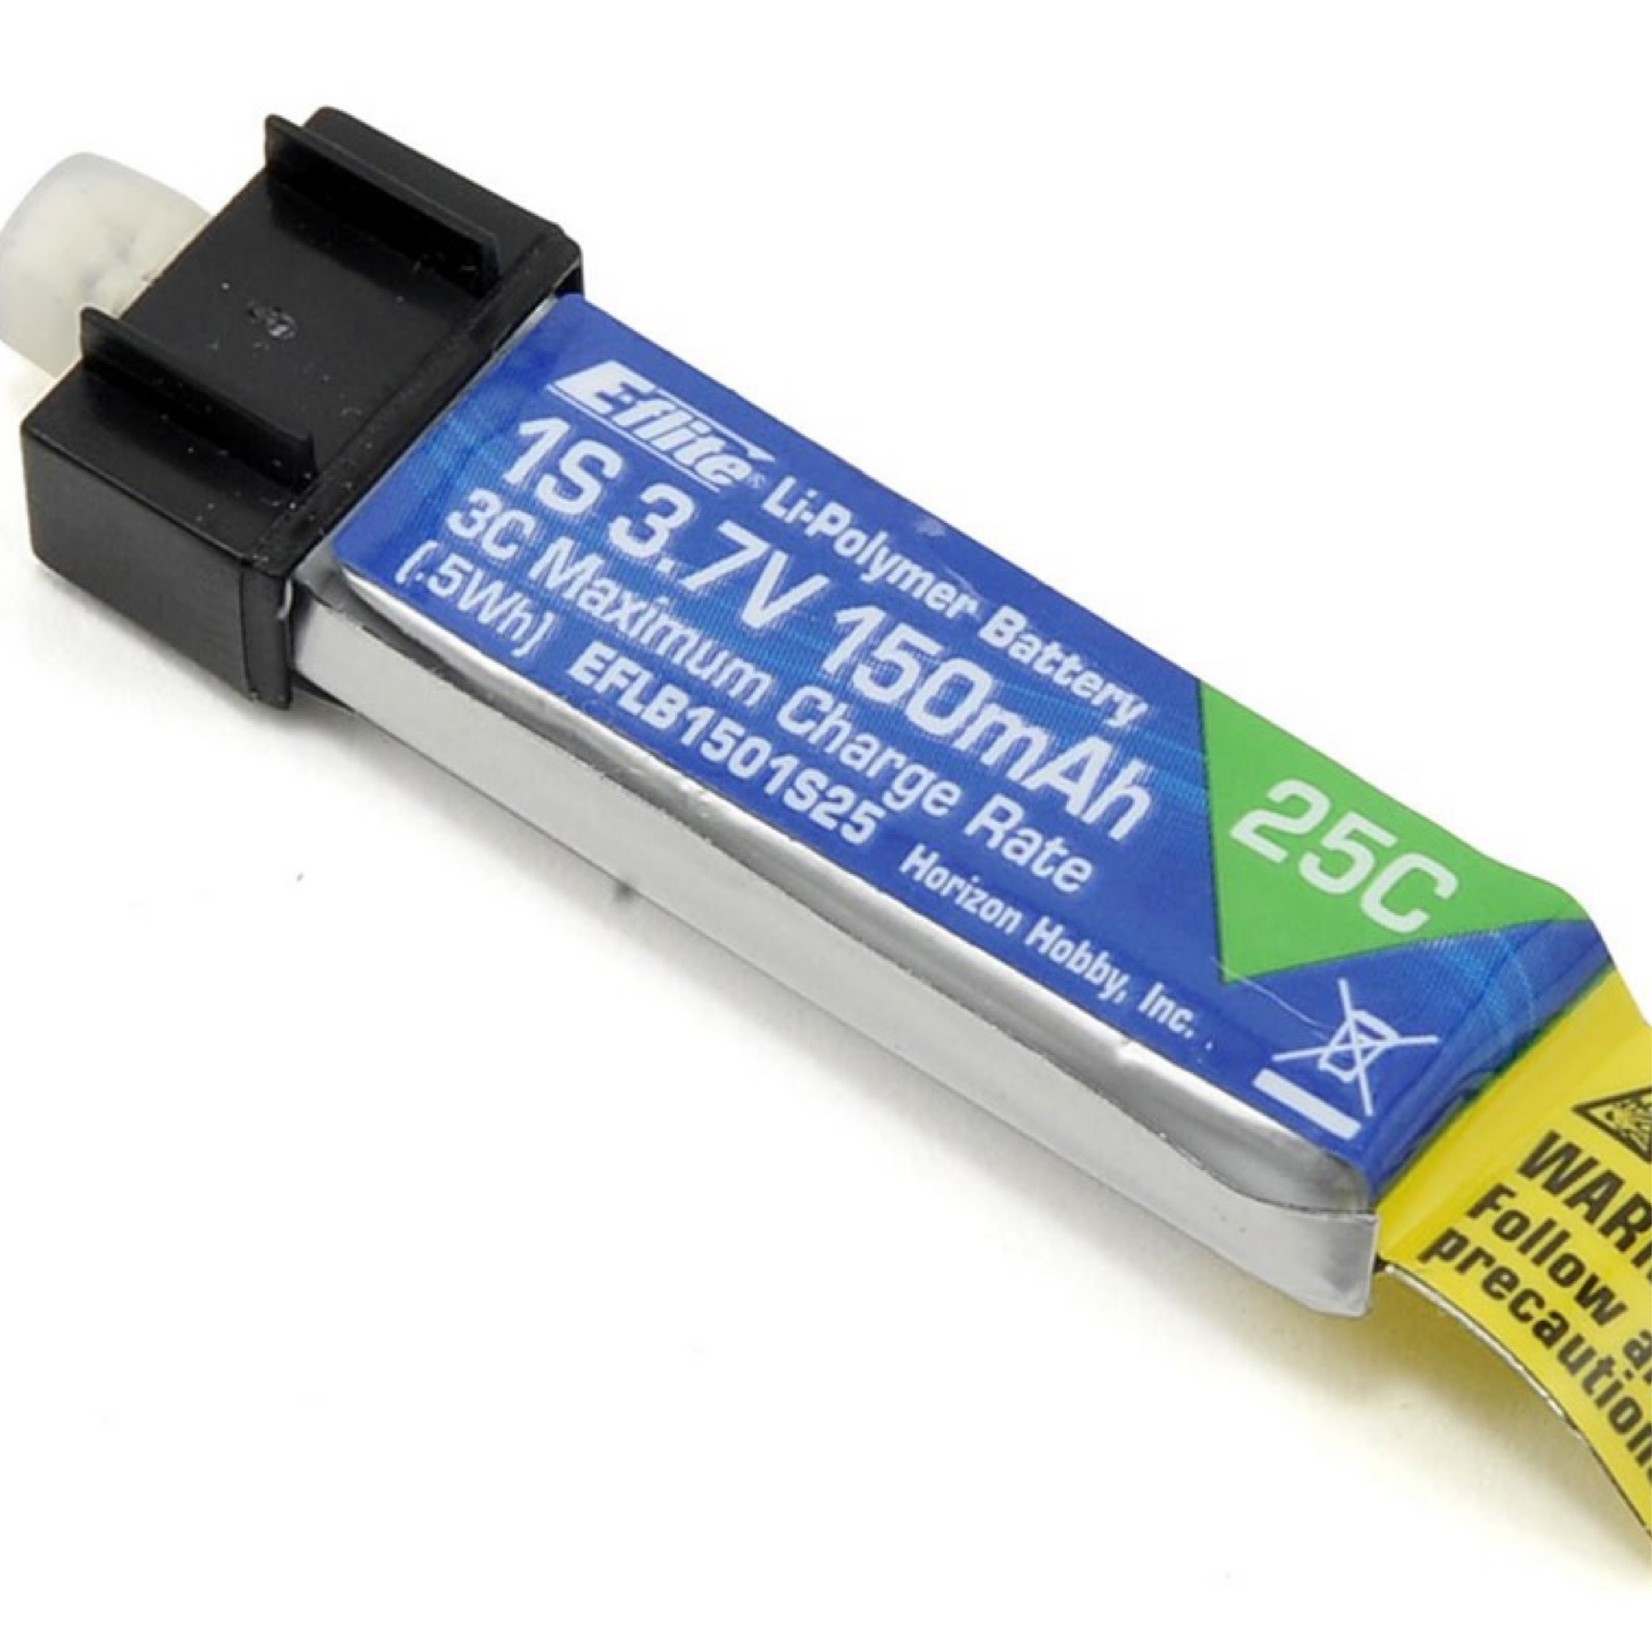 E-flite E-flite 1S LiPo Battery 25C (3.7V/150mAh) # EFLB1501S25